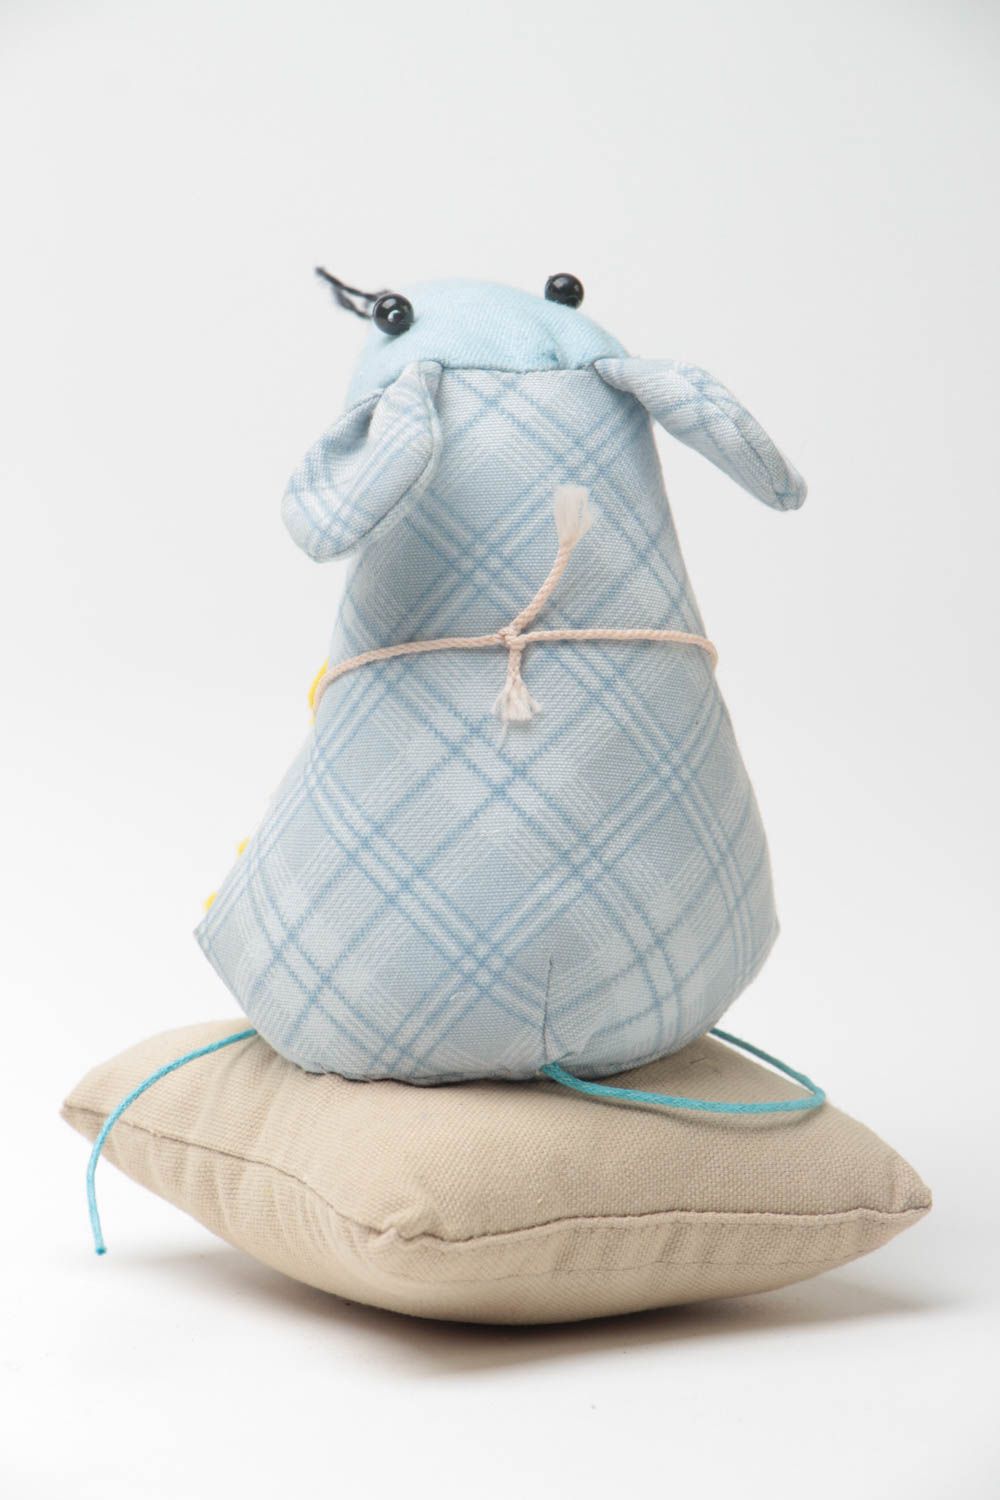 Мягкая игрушка крыска на подушке из ткани ручной работы милая в голубых тонах фото 4